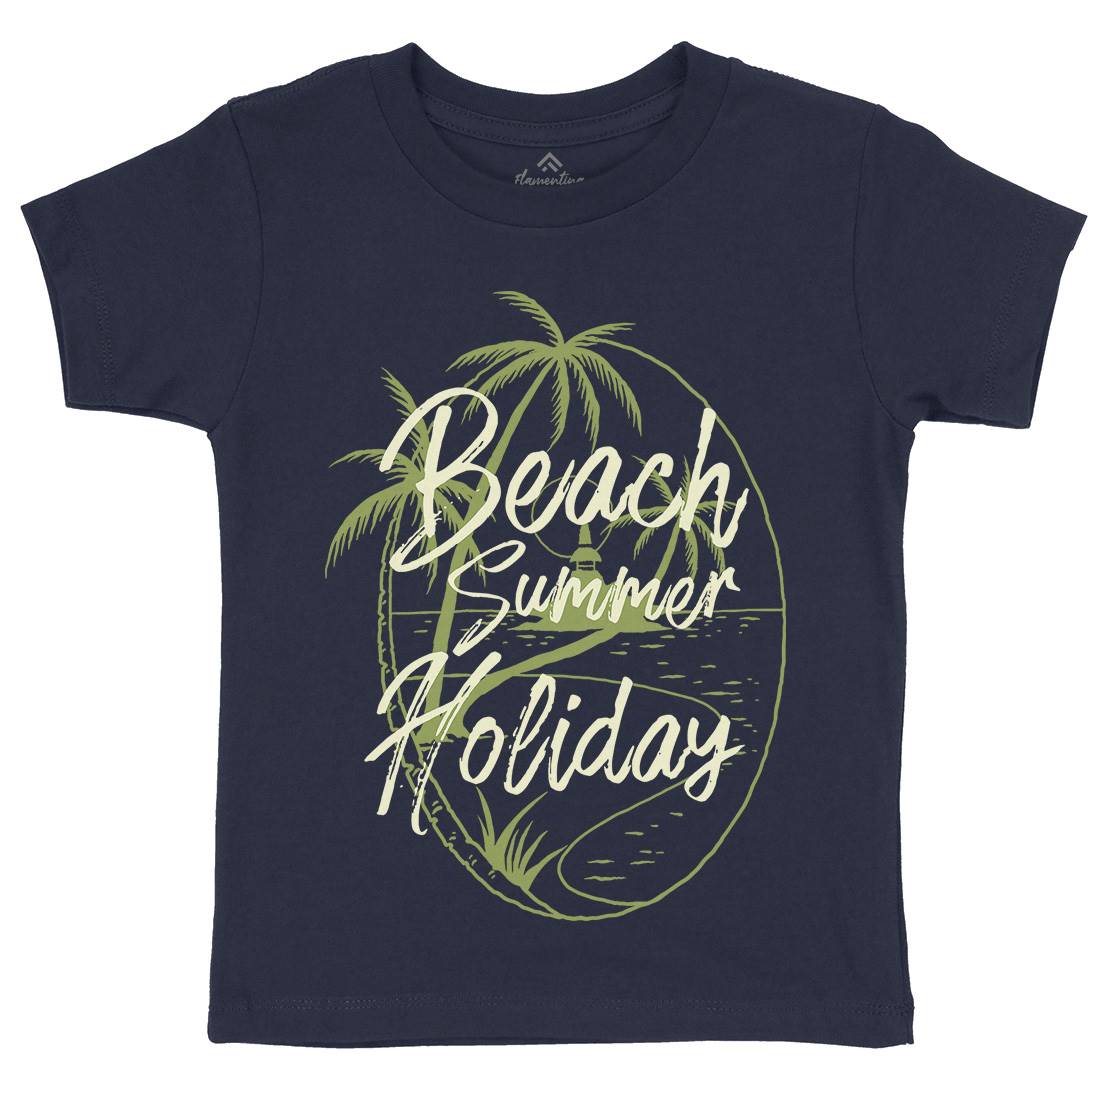 Beach Island Kids Organic Crew Neck T-Shirt Nature C709